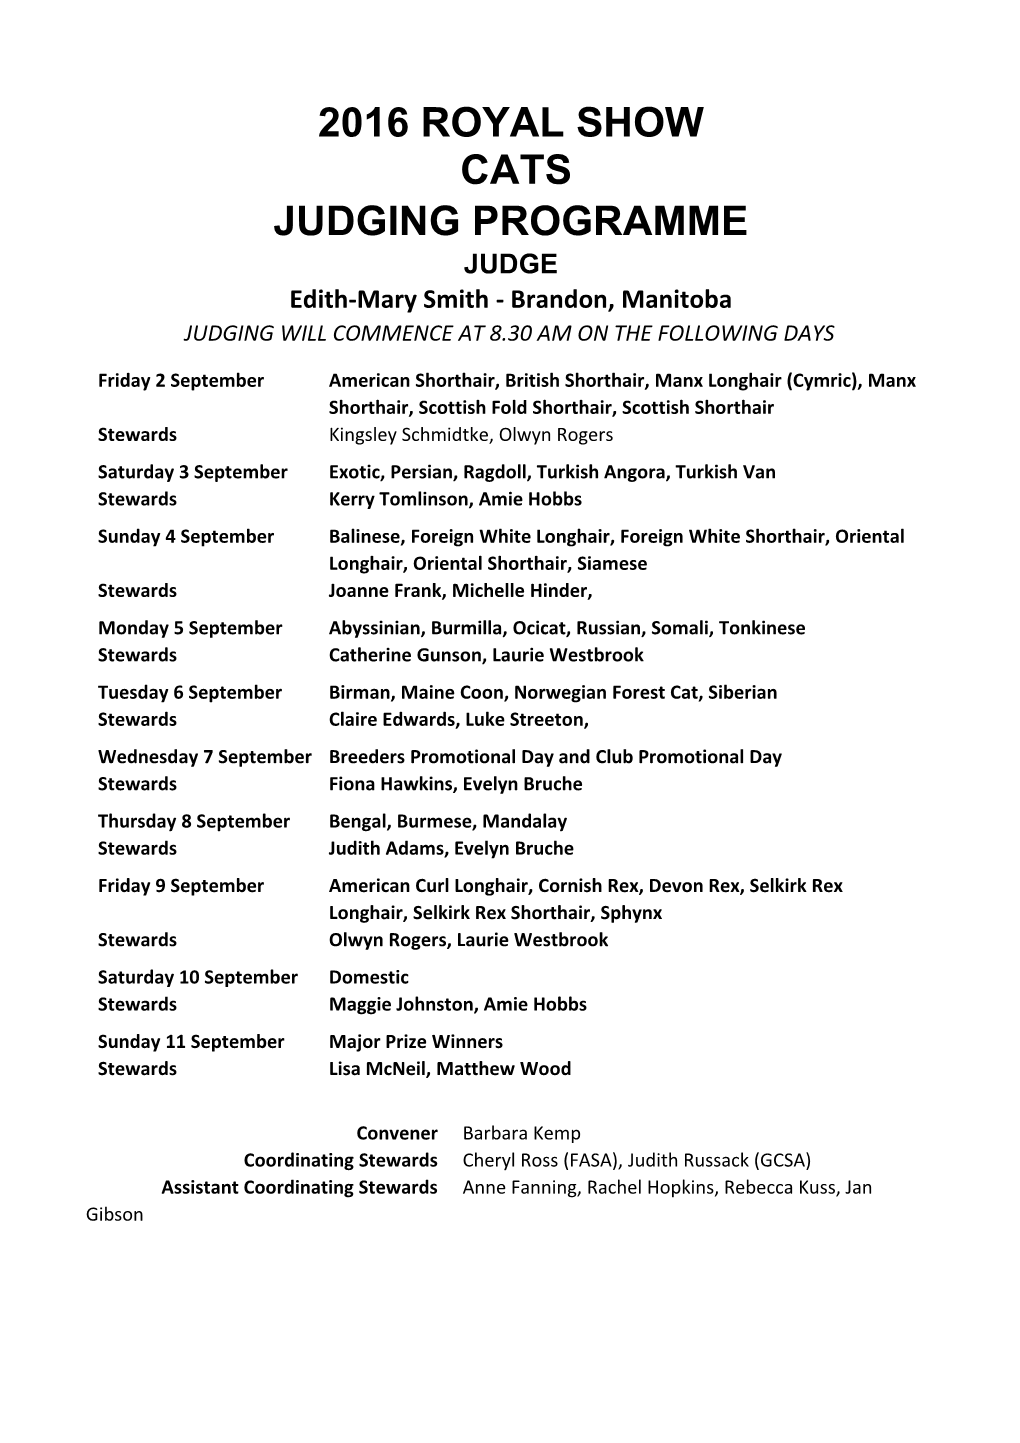 Judging Programme